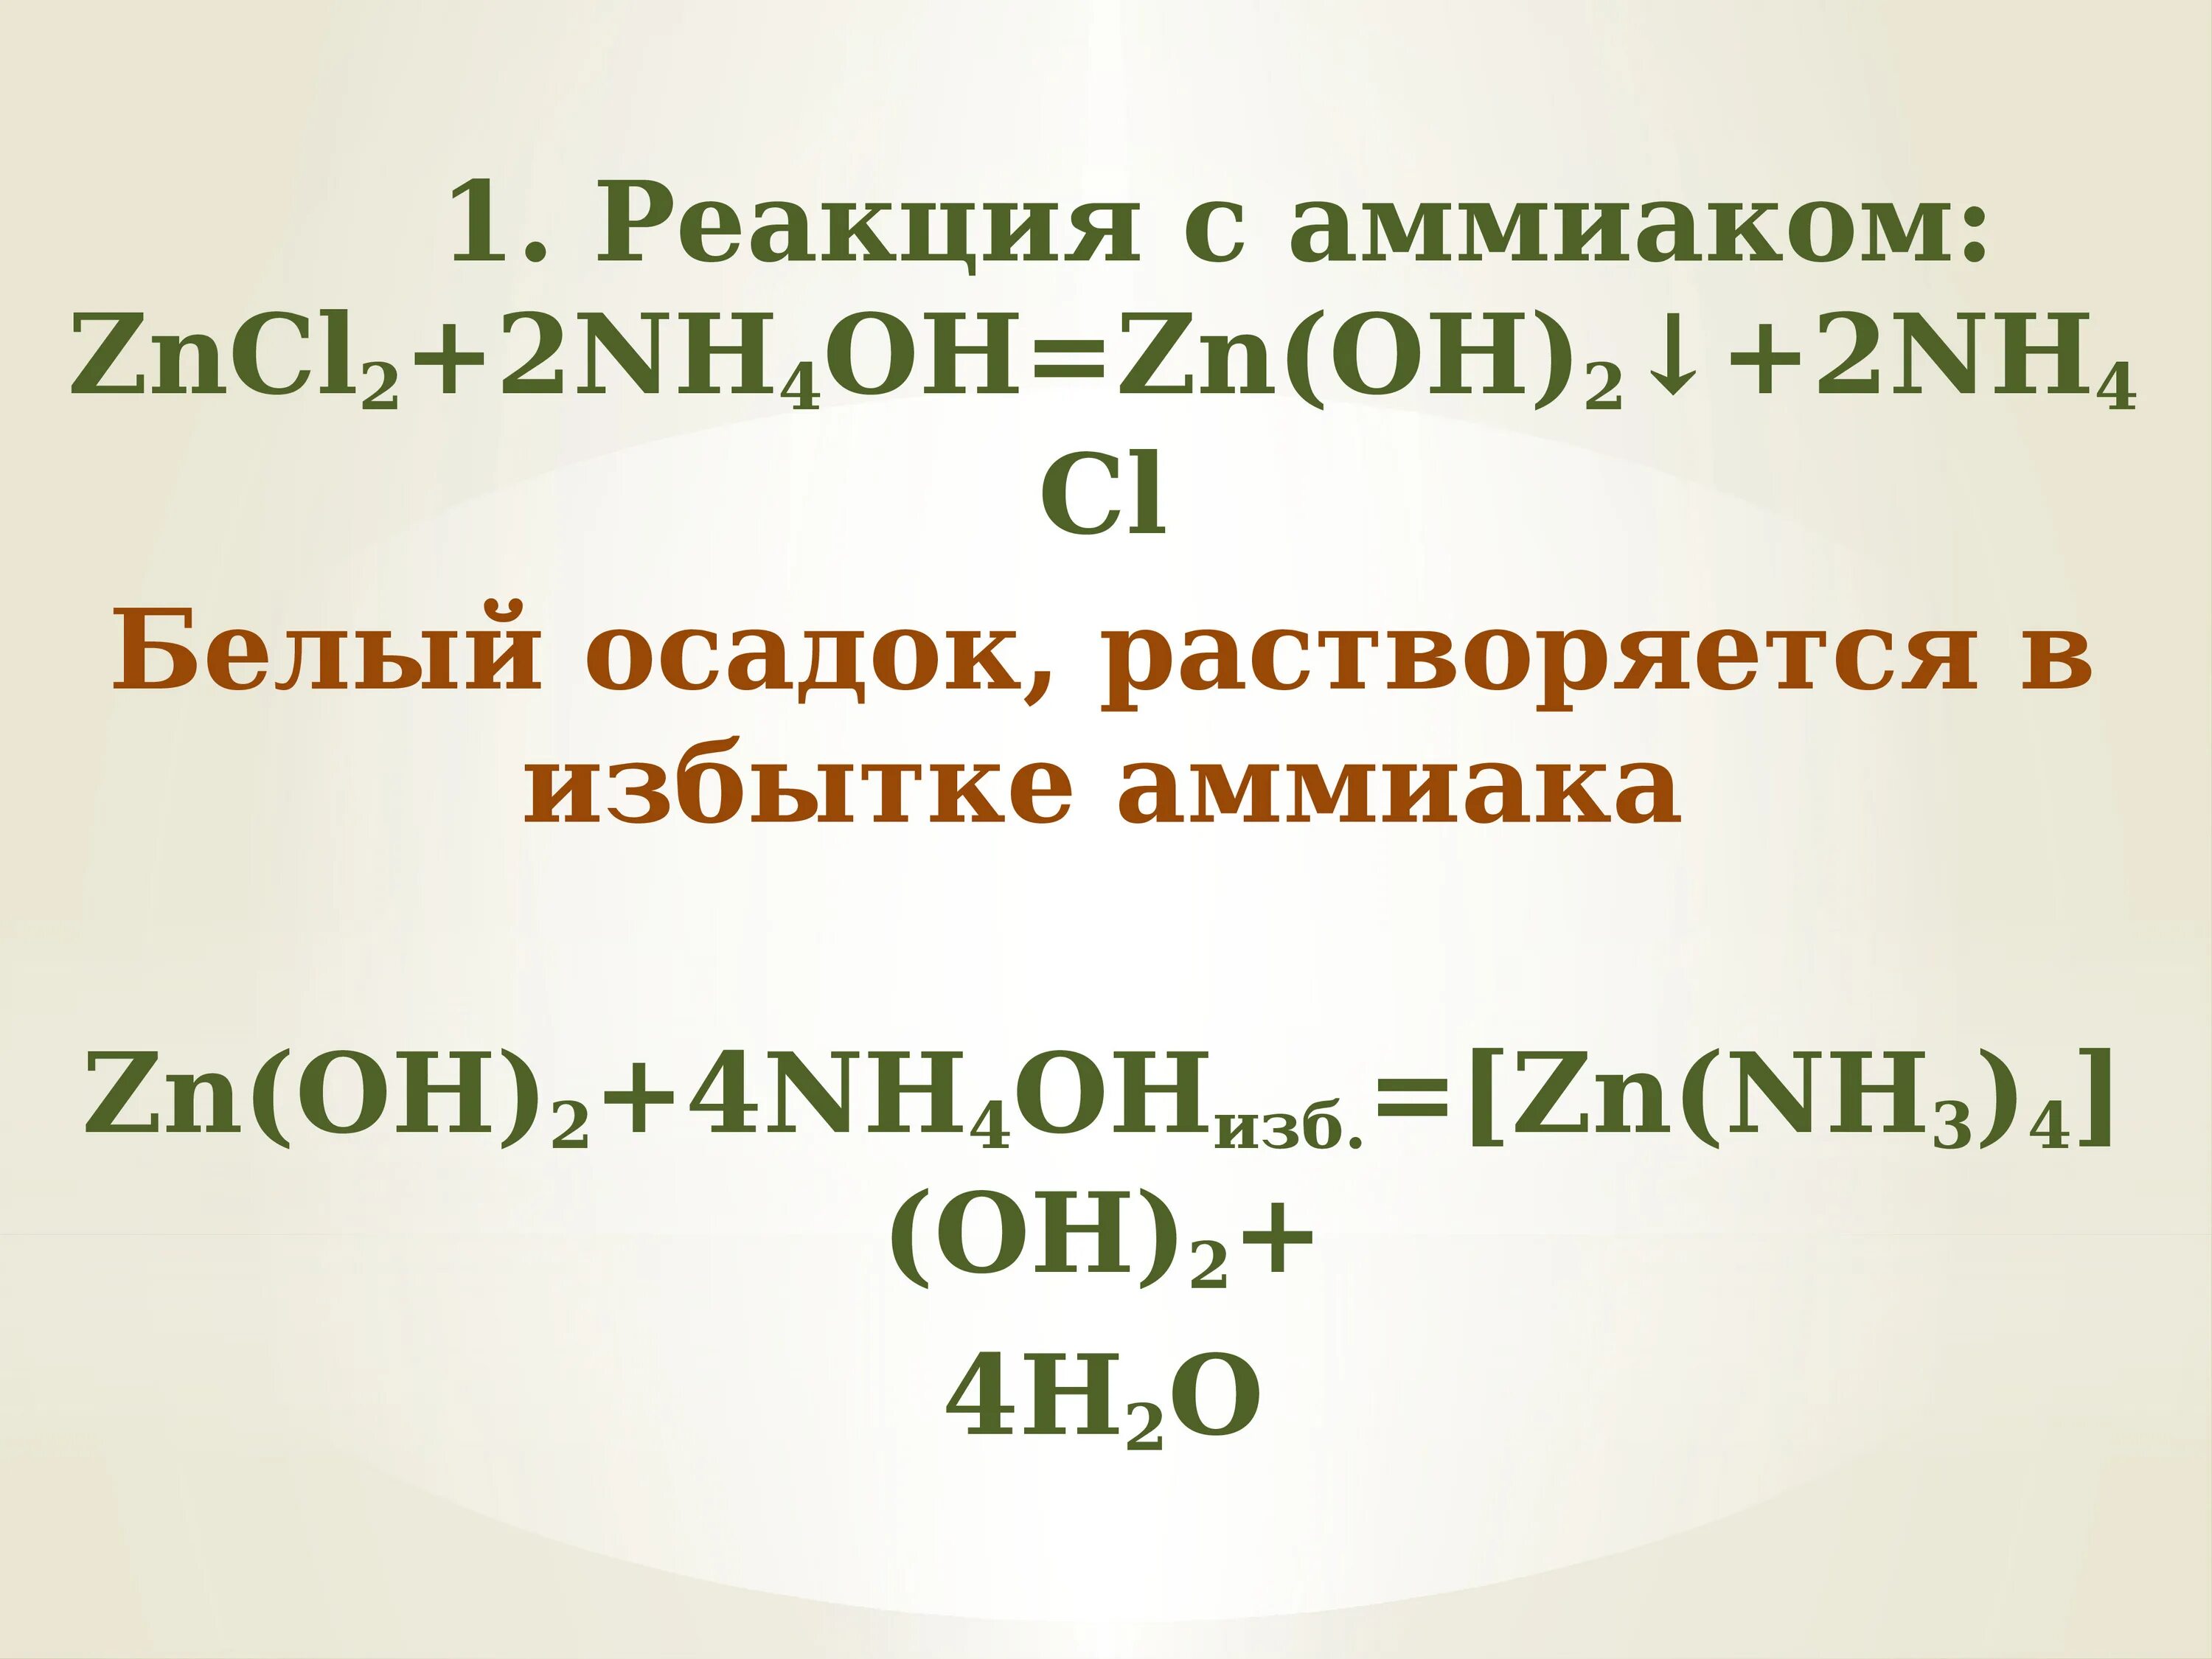 Zncl2 nh3 h2o. ZN Oh 2 nh4oh. Zncl2 nh4oh. [ZN(nh3)4](Oh)2.